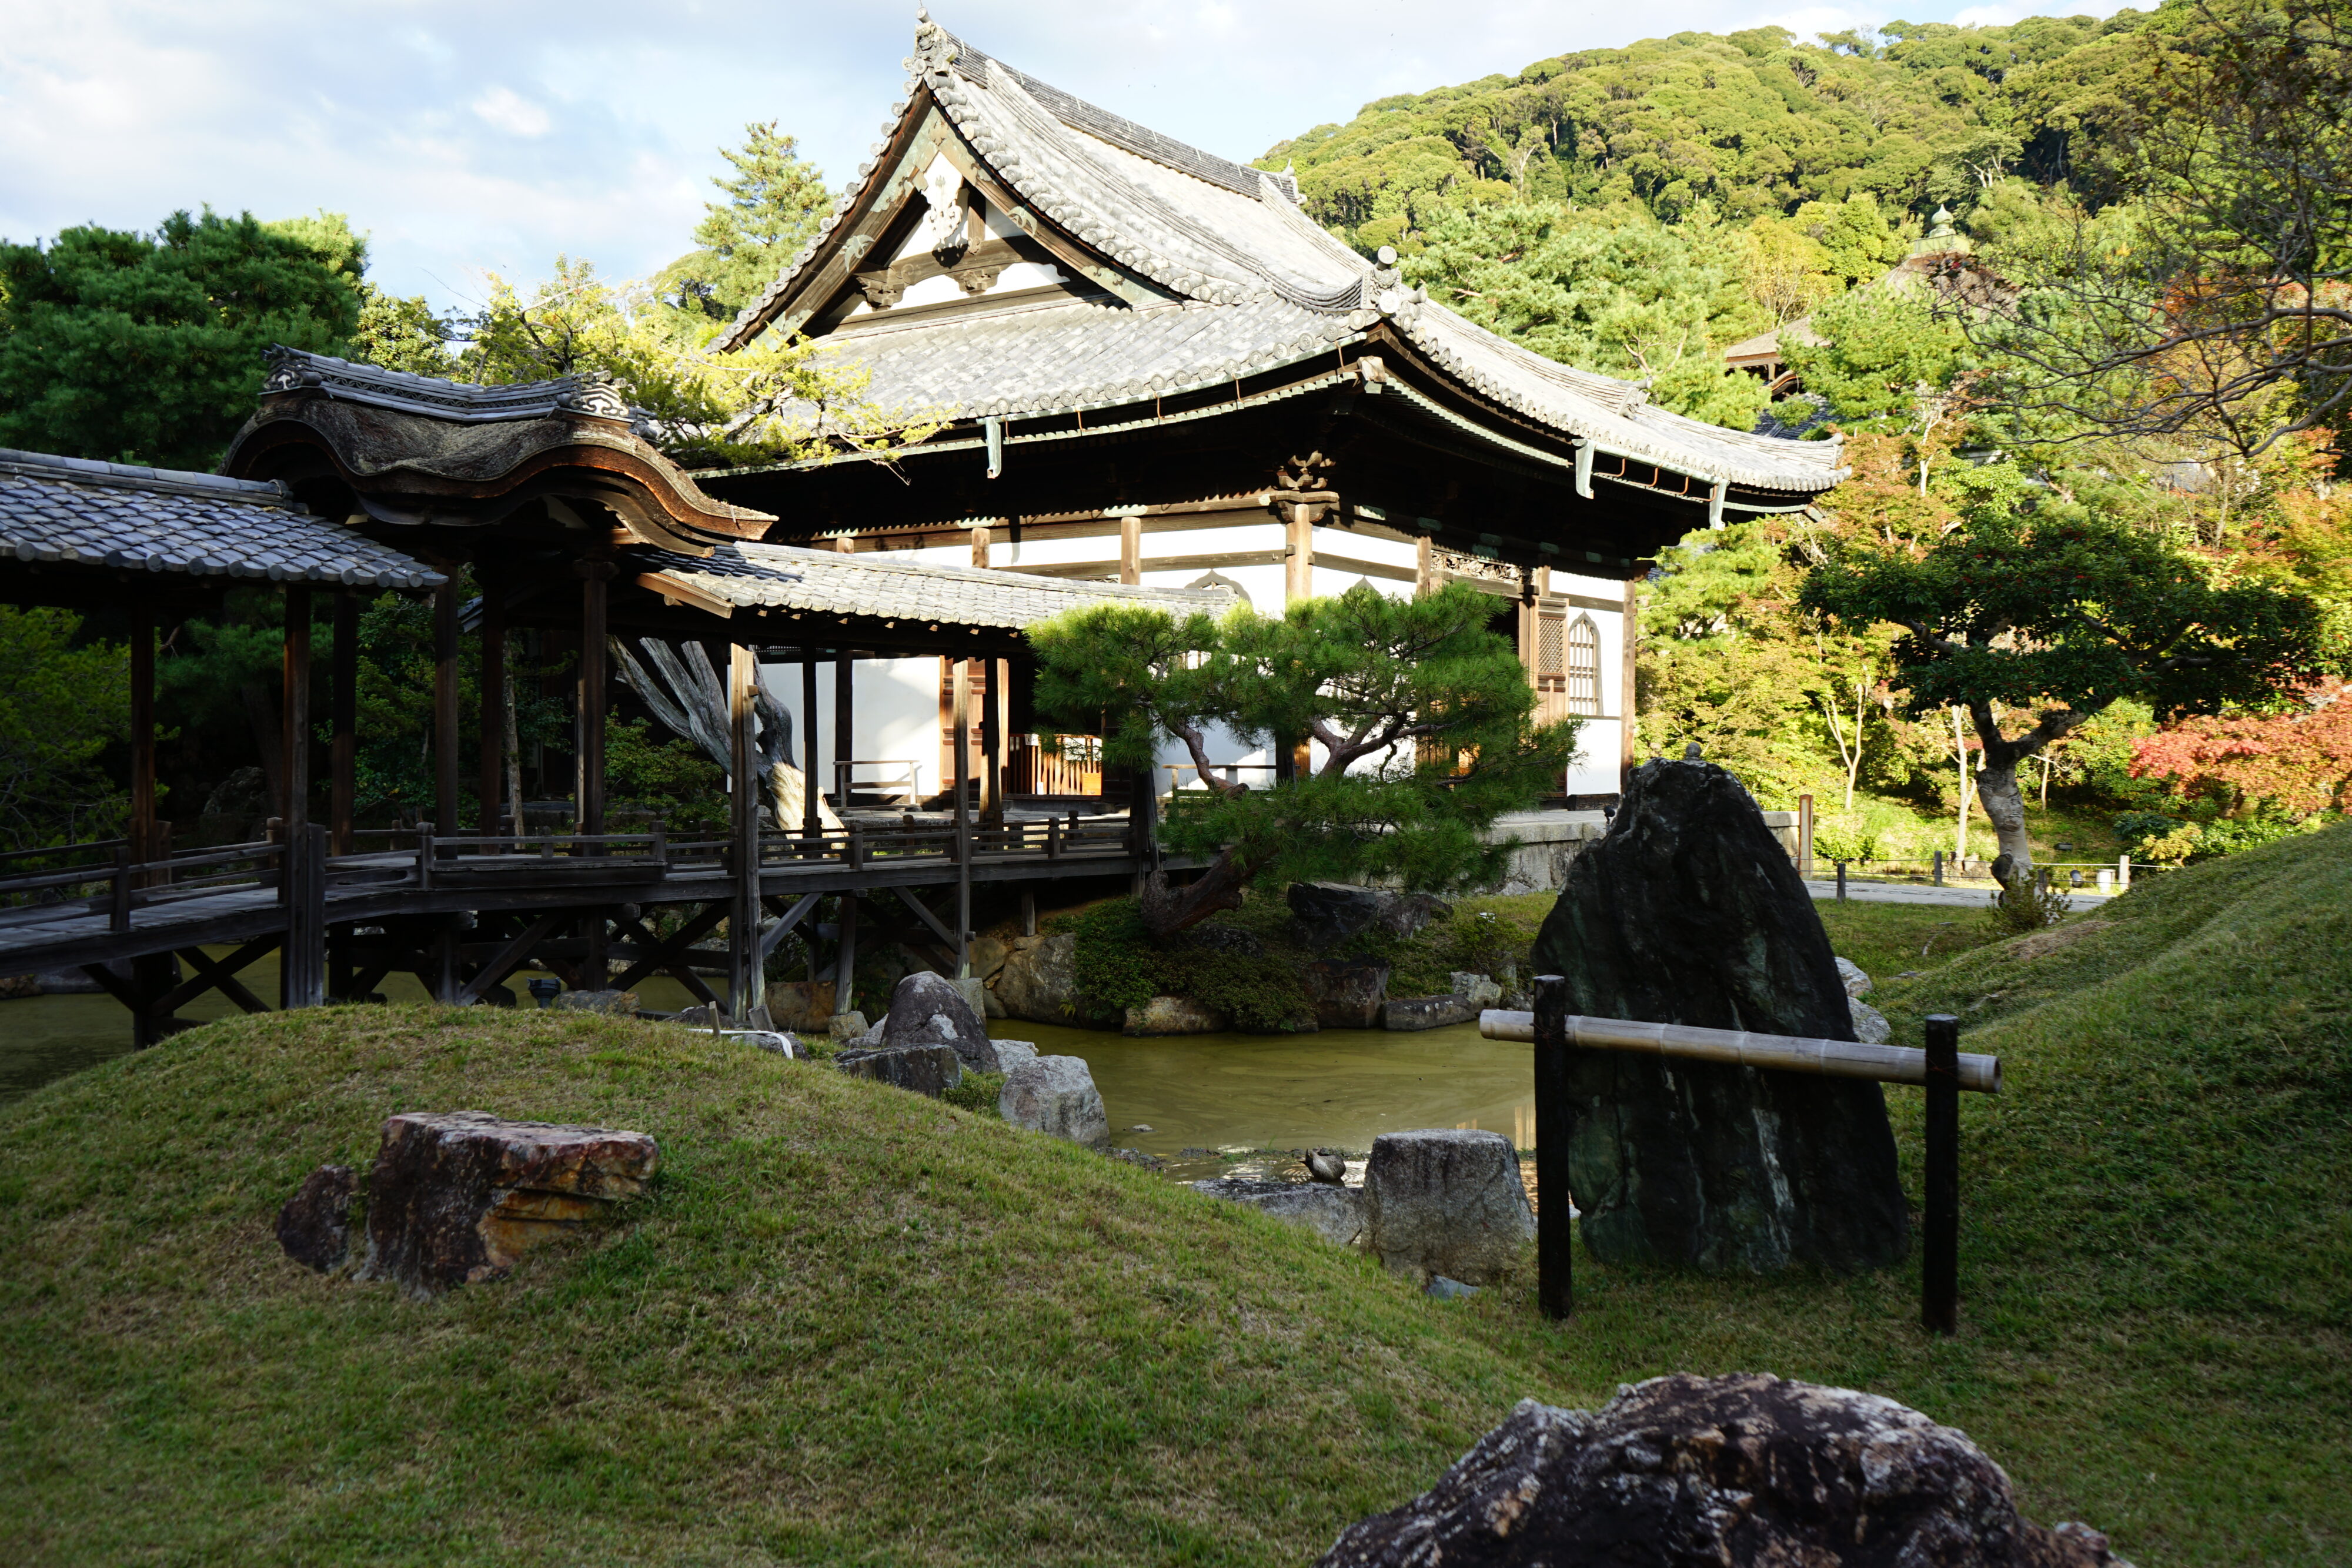 Blick in einen Tempelgarten mit Teich, Steinen, einer Brücke, kleinen Bäumen und einem kleinen Tempelgebäude. Im Hintergrund ein mit Bäumen bewachsener Hügel.